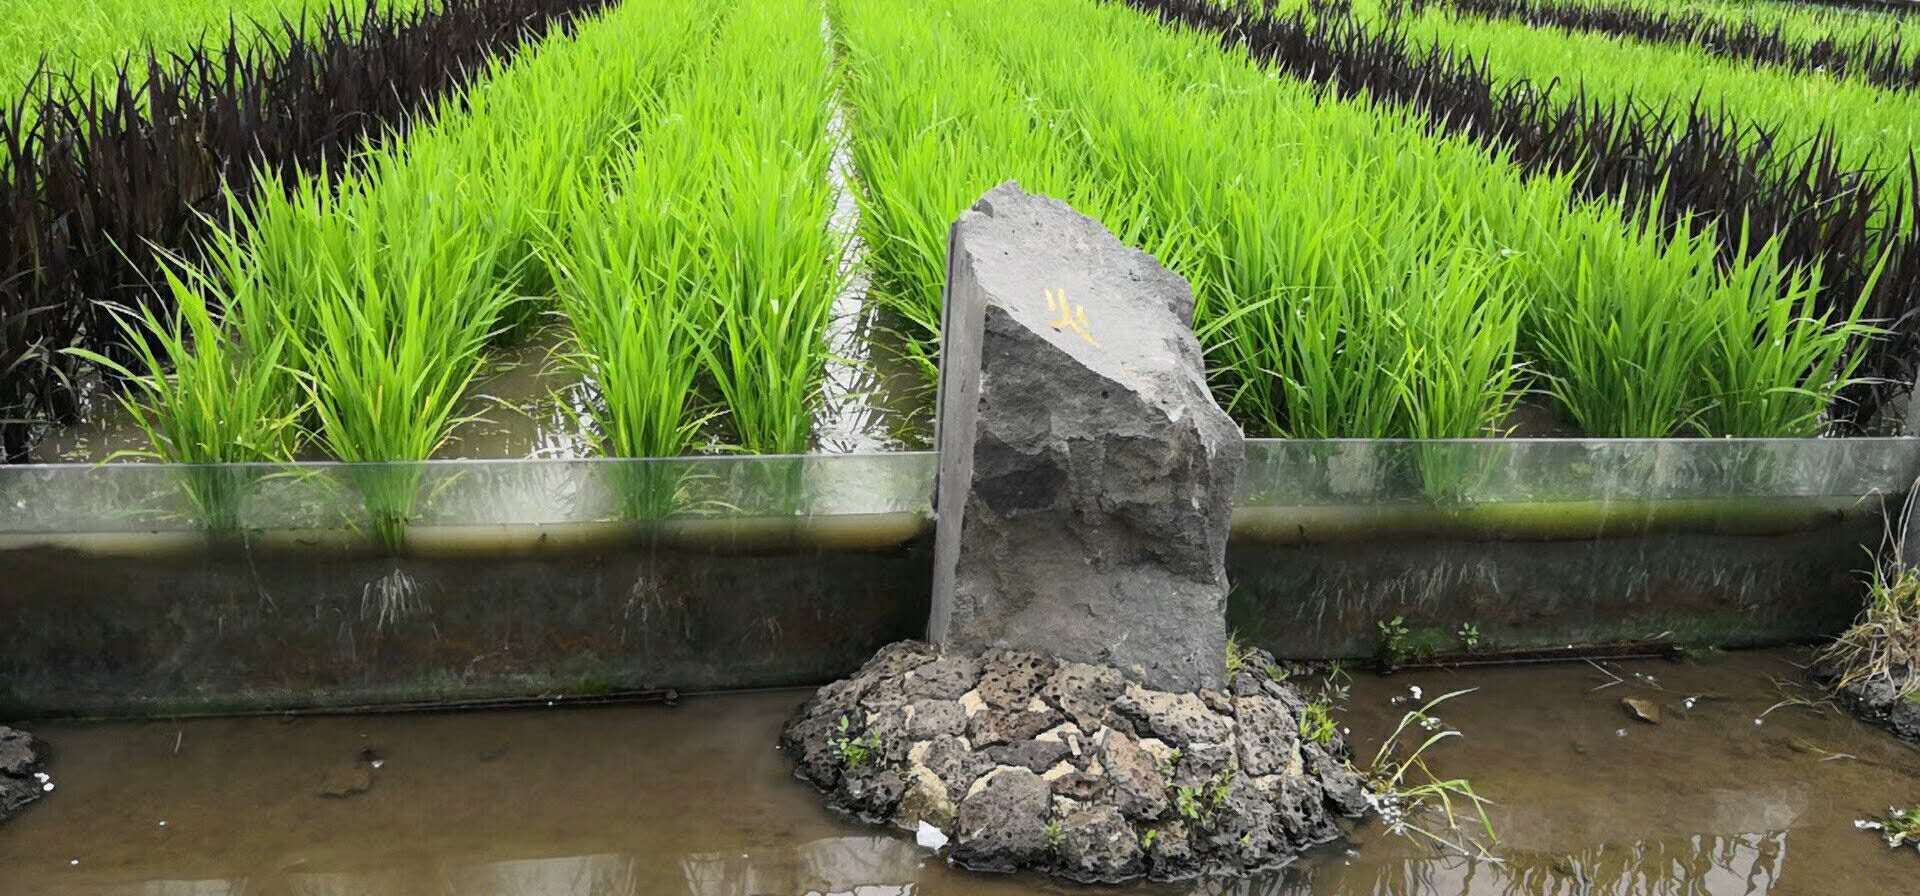 响水大米石板香龙稻5公斤箱